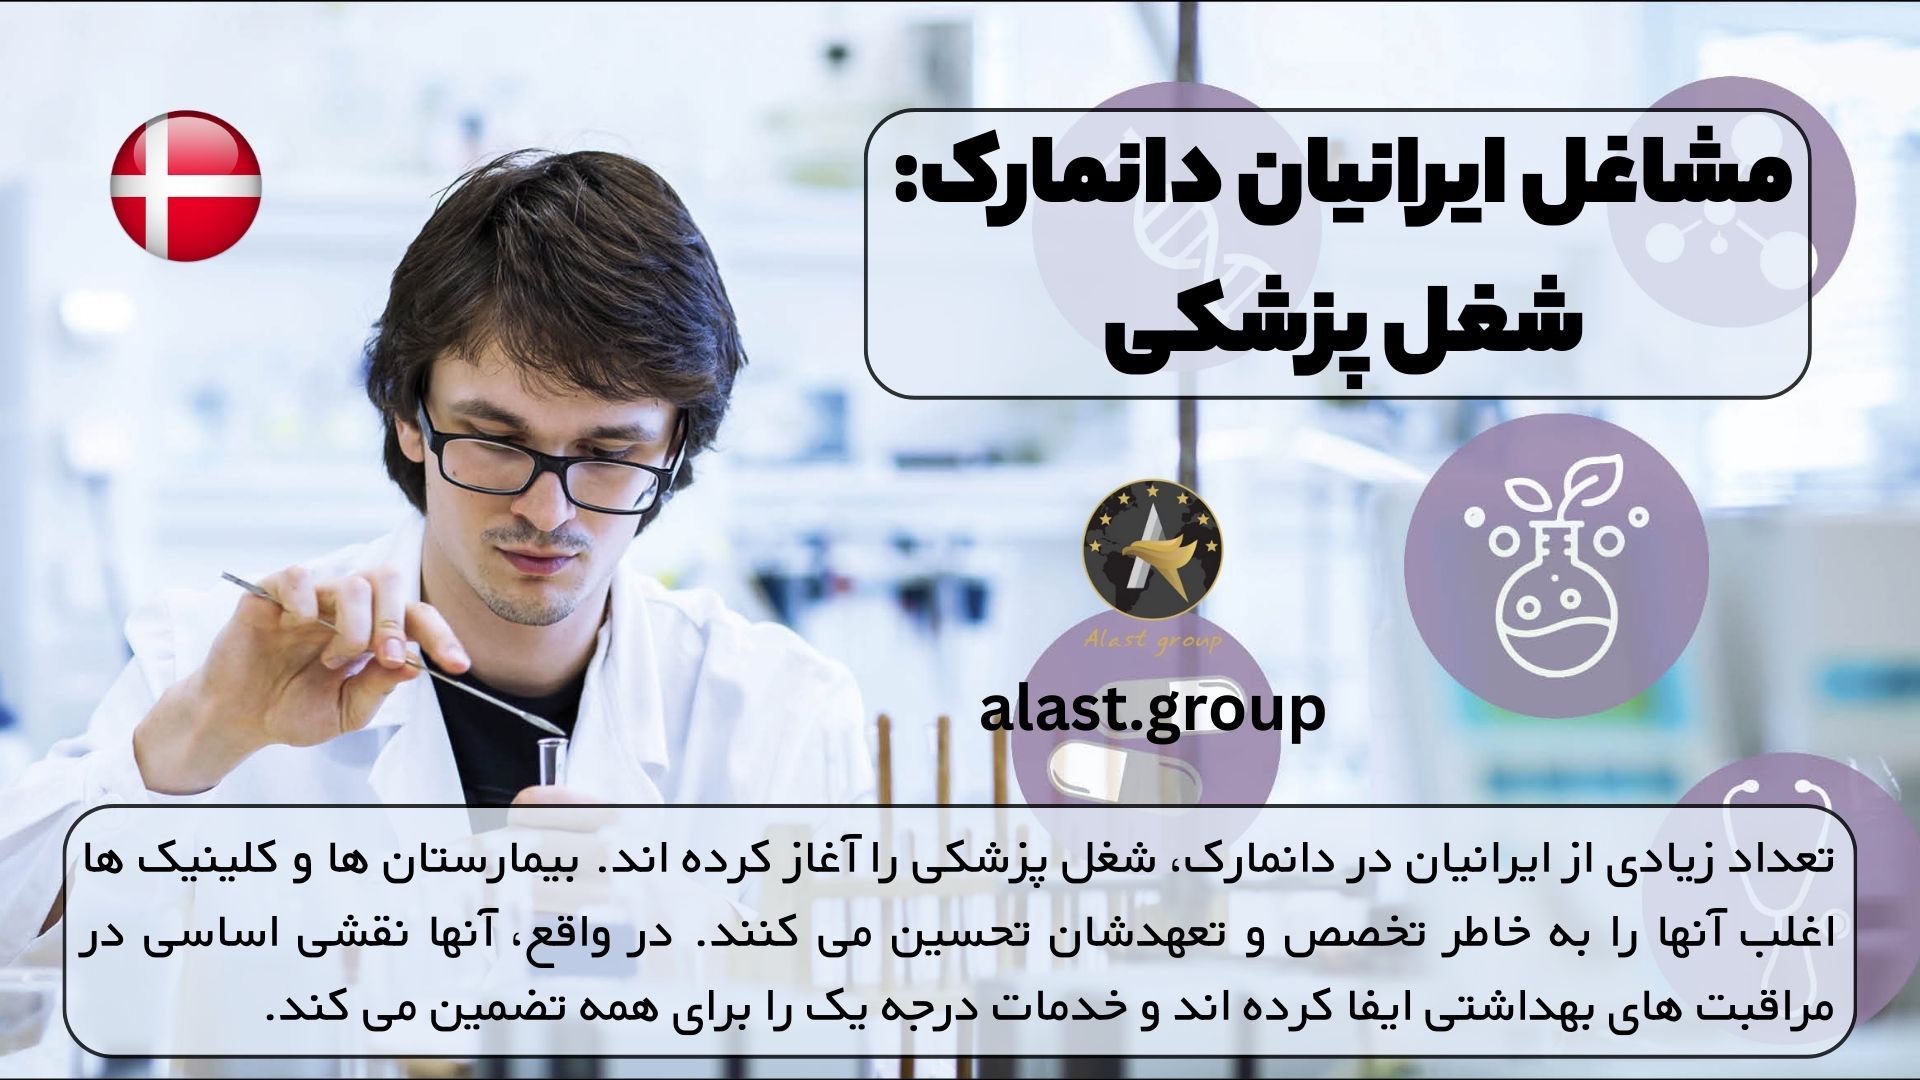 مشاغل ایرانیان دانمارک: شغل پزشکی